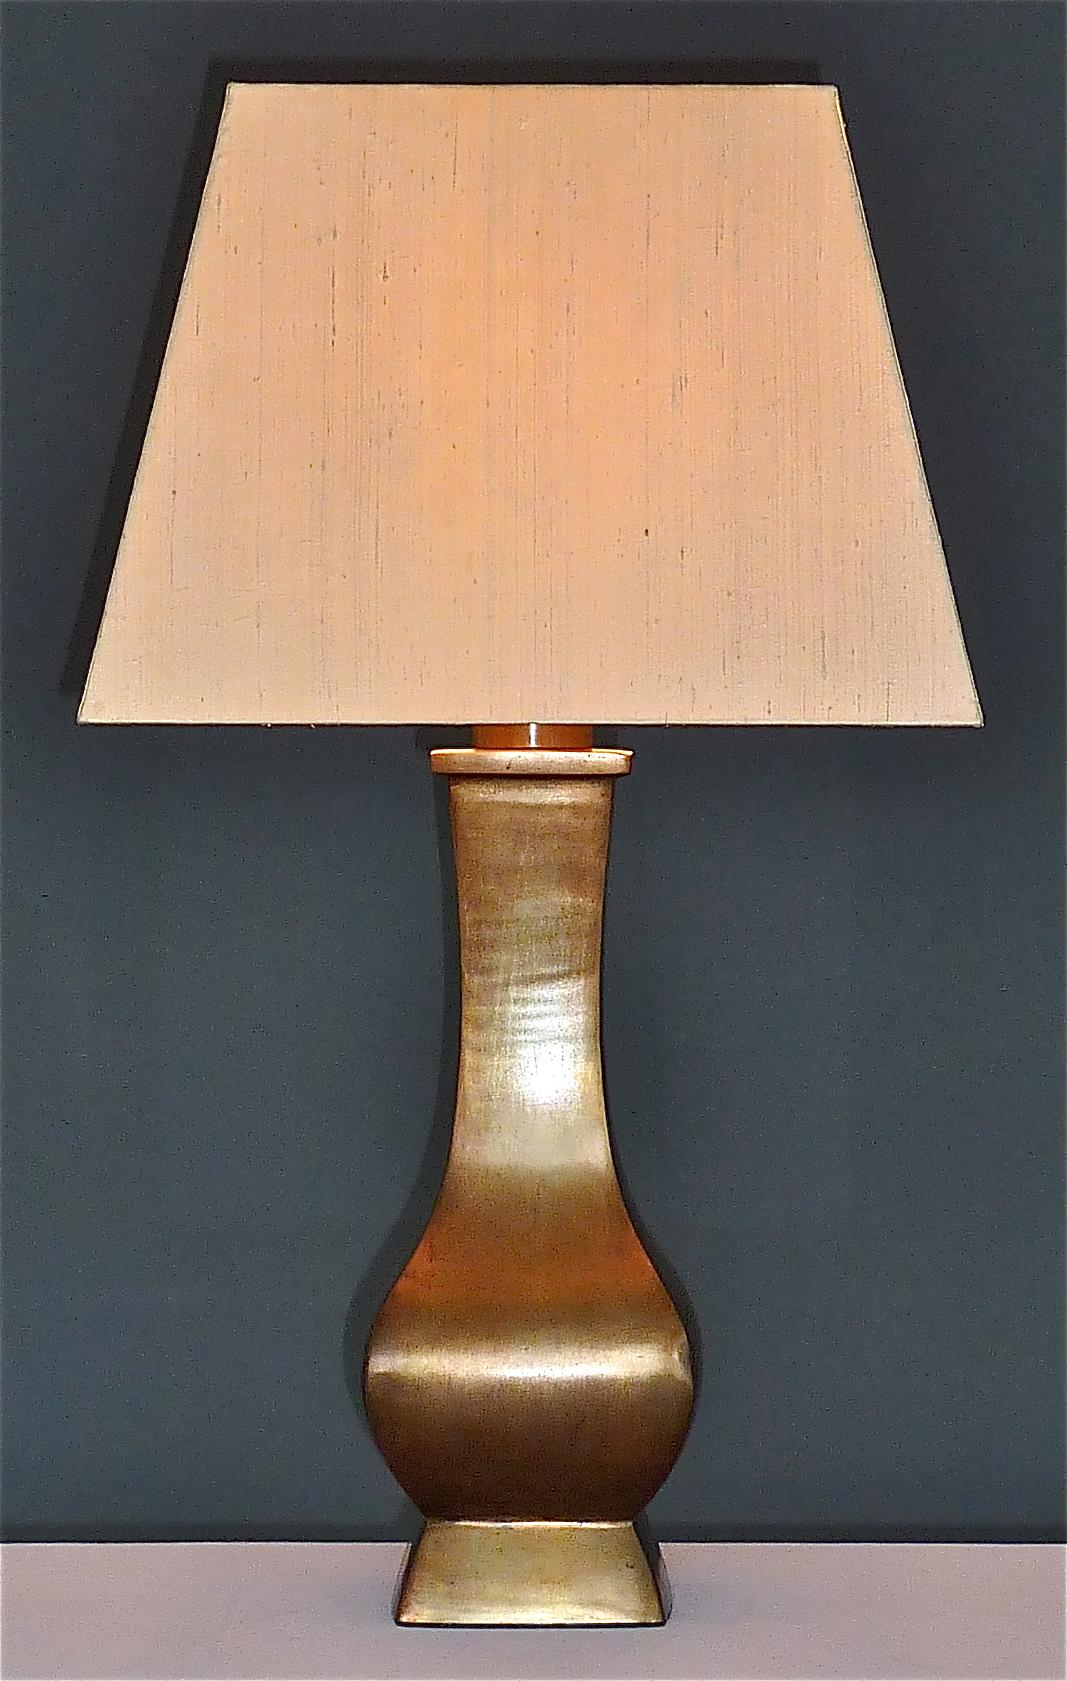 Exceptionnelle lampe de table en bronze lourd patiné, attribuée à la Maison Jansen, France, vers 1960-1970, dans le style de Maria Pergay et Gabriella Crespi. Le socle carré légèrement arrondi mesure 15 x 15 cm / 5.91 x 5.91 pouces, monte et